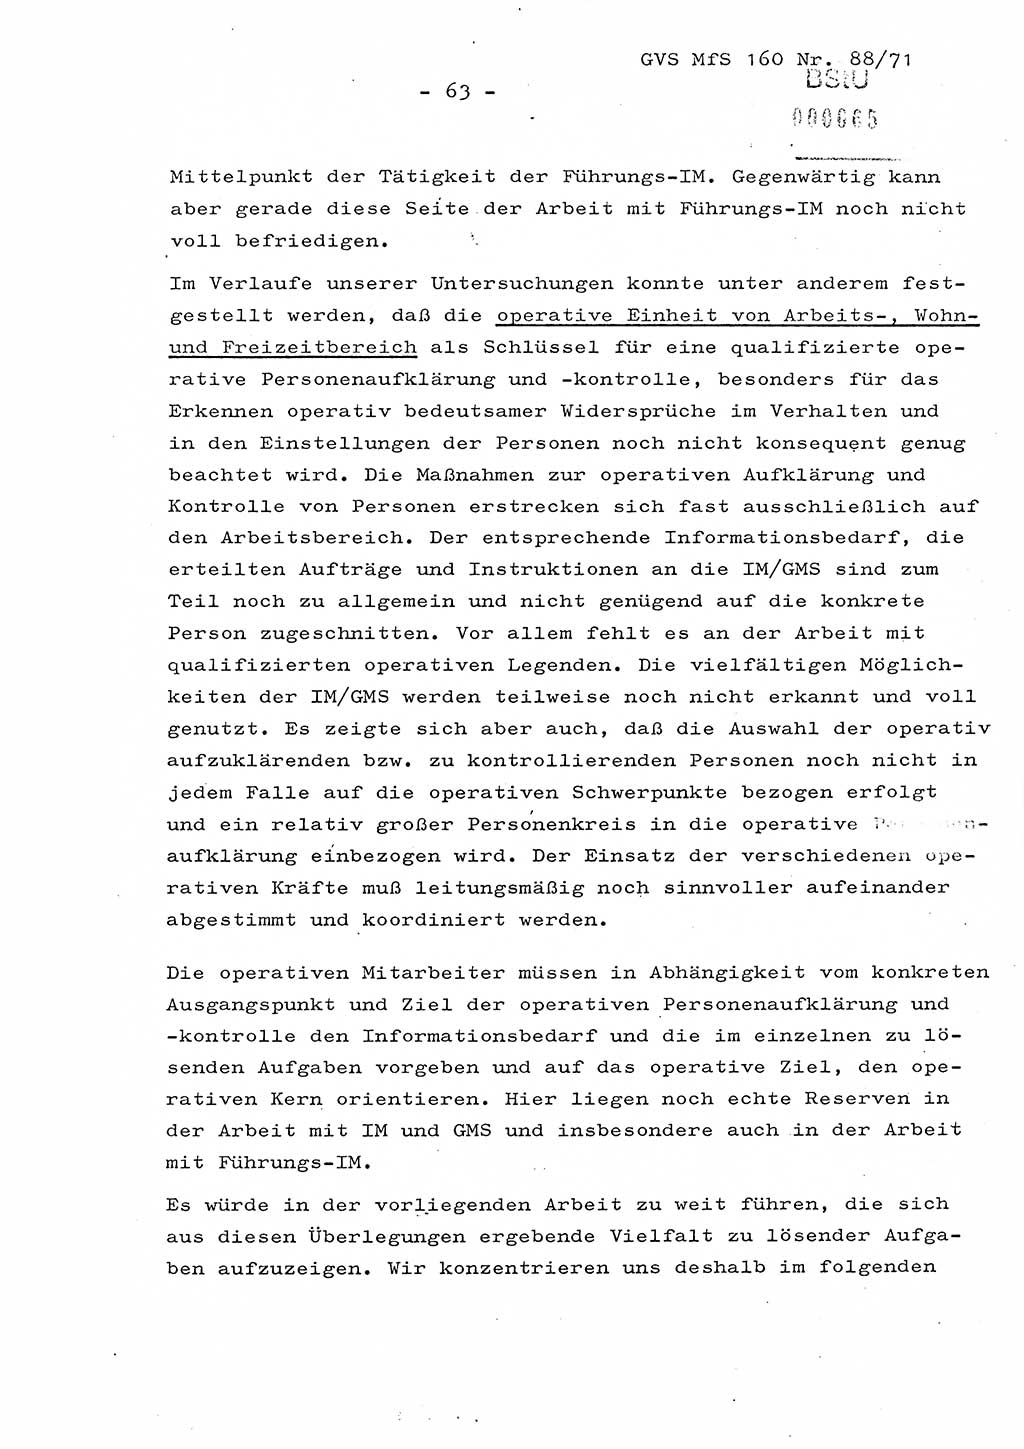 Dissertation Oberstleutnant Josef Schwarz (BV Schwerin), Major Fritz Amm (JHS), Hauptmann Peter Gräßler (JHS), Ministerium für Staatssicherheit (MfS) [Deutsche Demokratische Republik (DDR)], Juristische Hochschule (JHS), Geheime Verschlußsache (GVS) 160-88/71, Potsdam 1972, Seite 63 (Diss. MfS DDR JHS GVS 160-88/71 1972, S. 63)